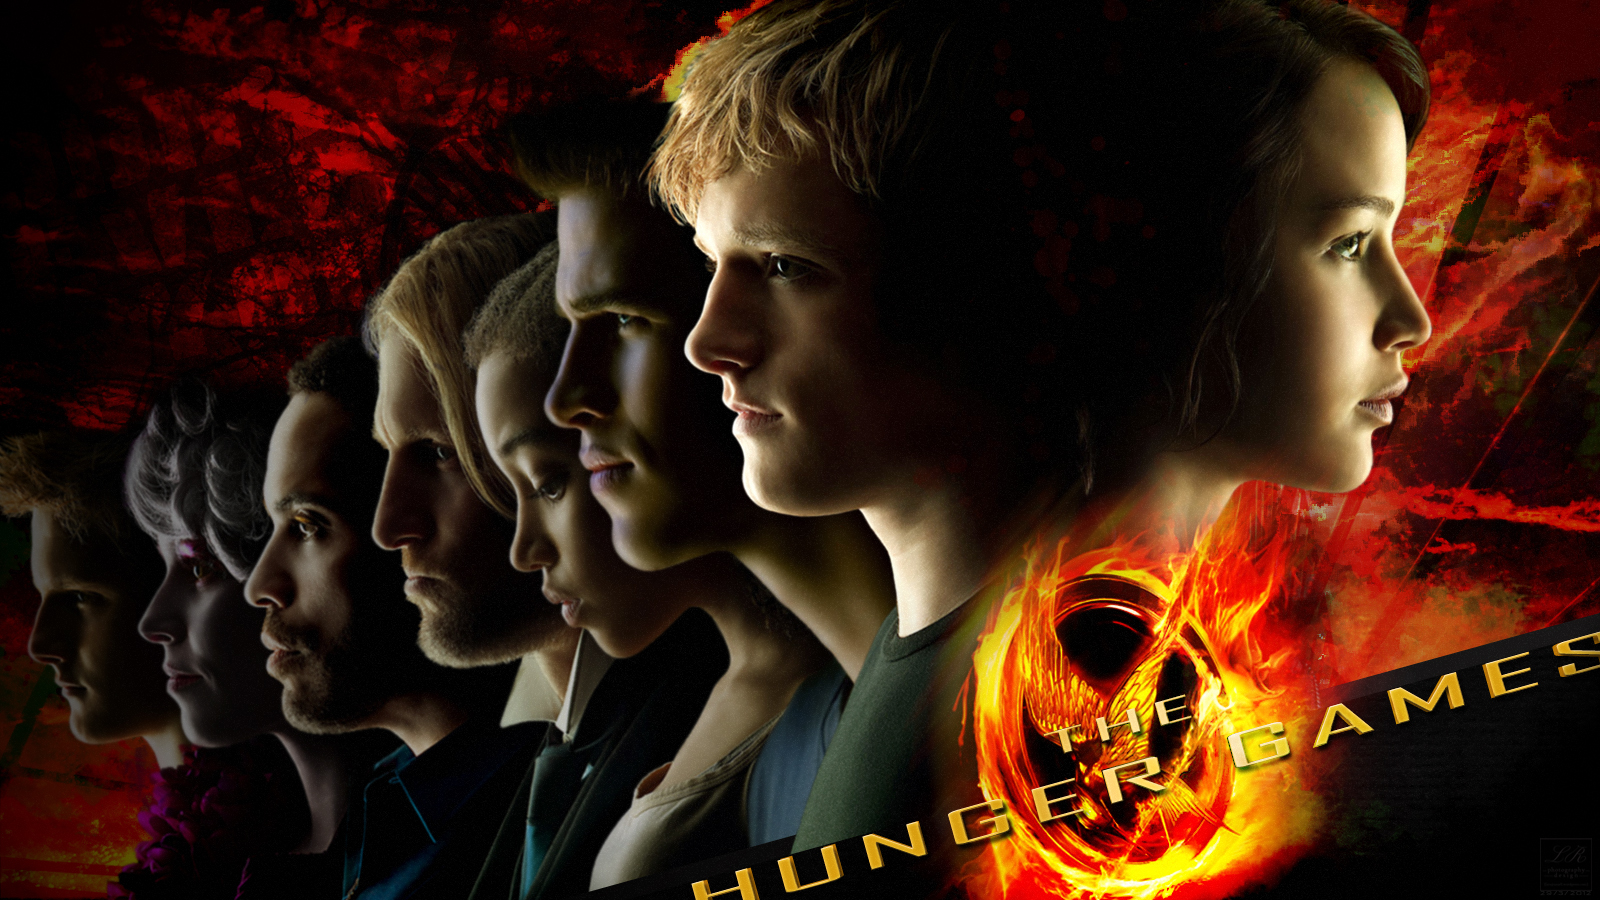 Hunger Games Wallpaper For Desktop - Hunger Games Wallpaper Hd - HD Wallpaper 